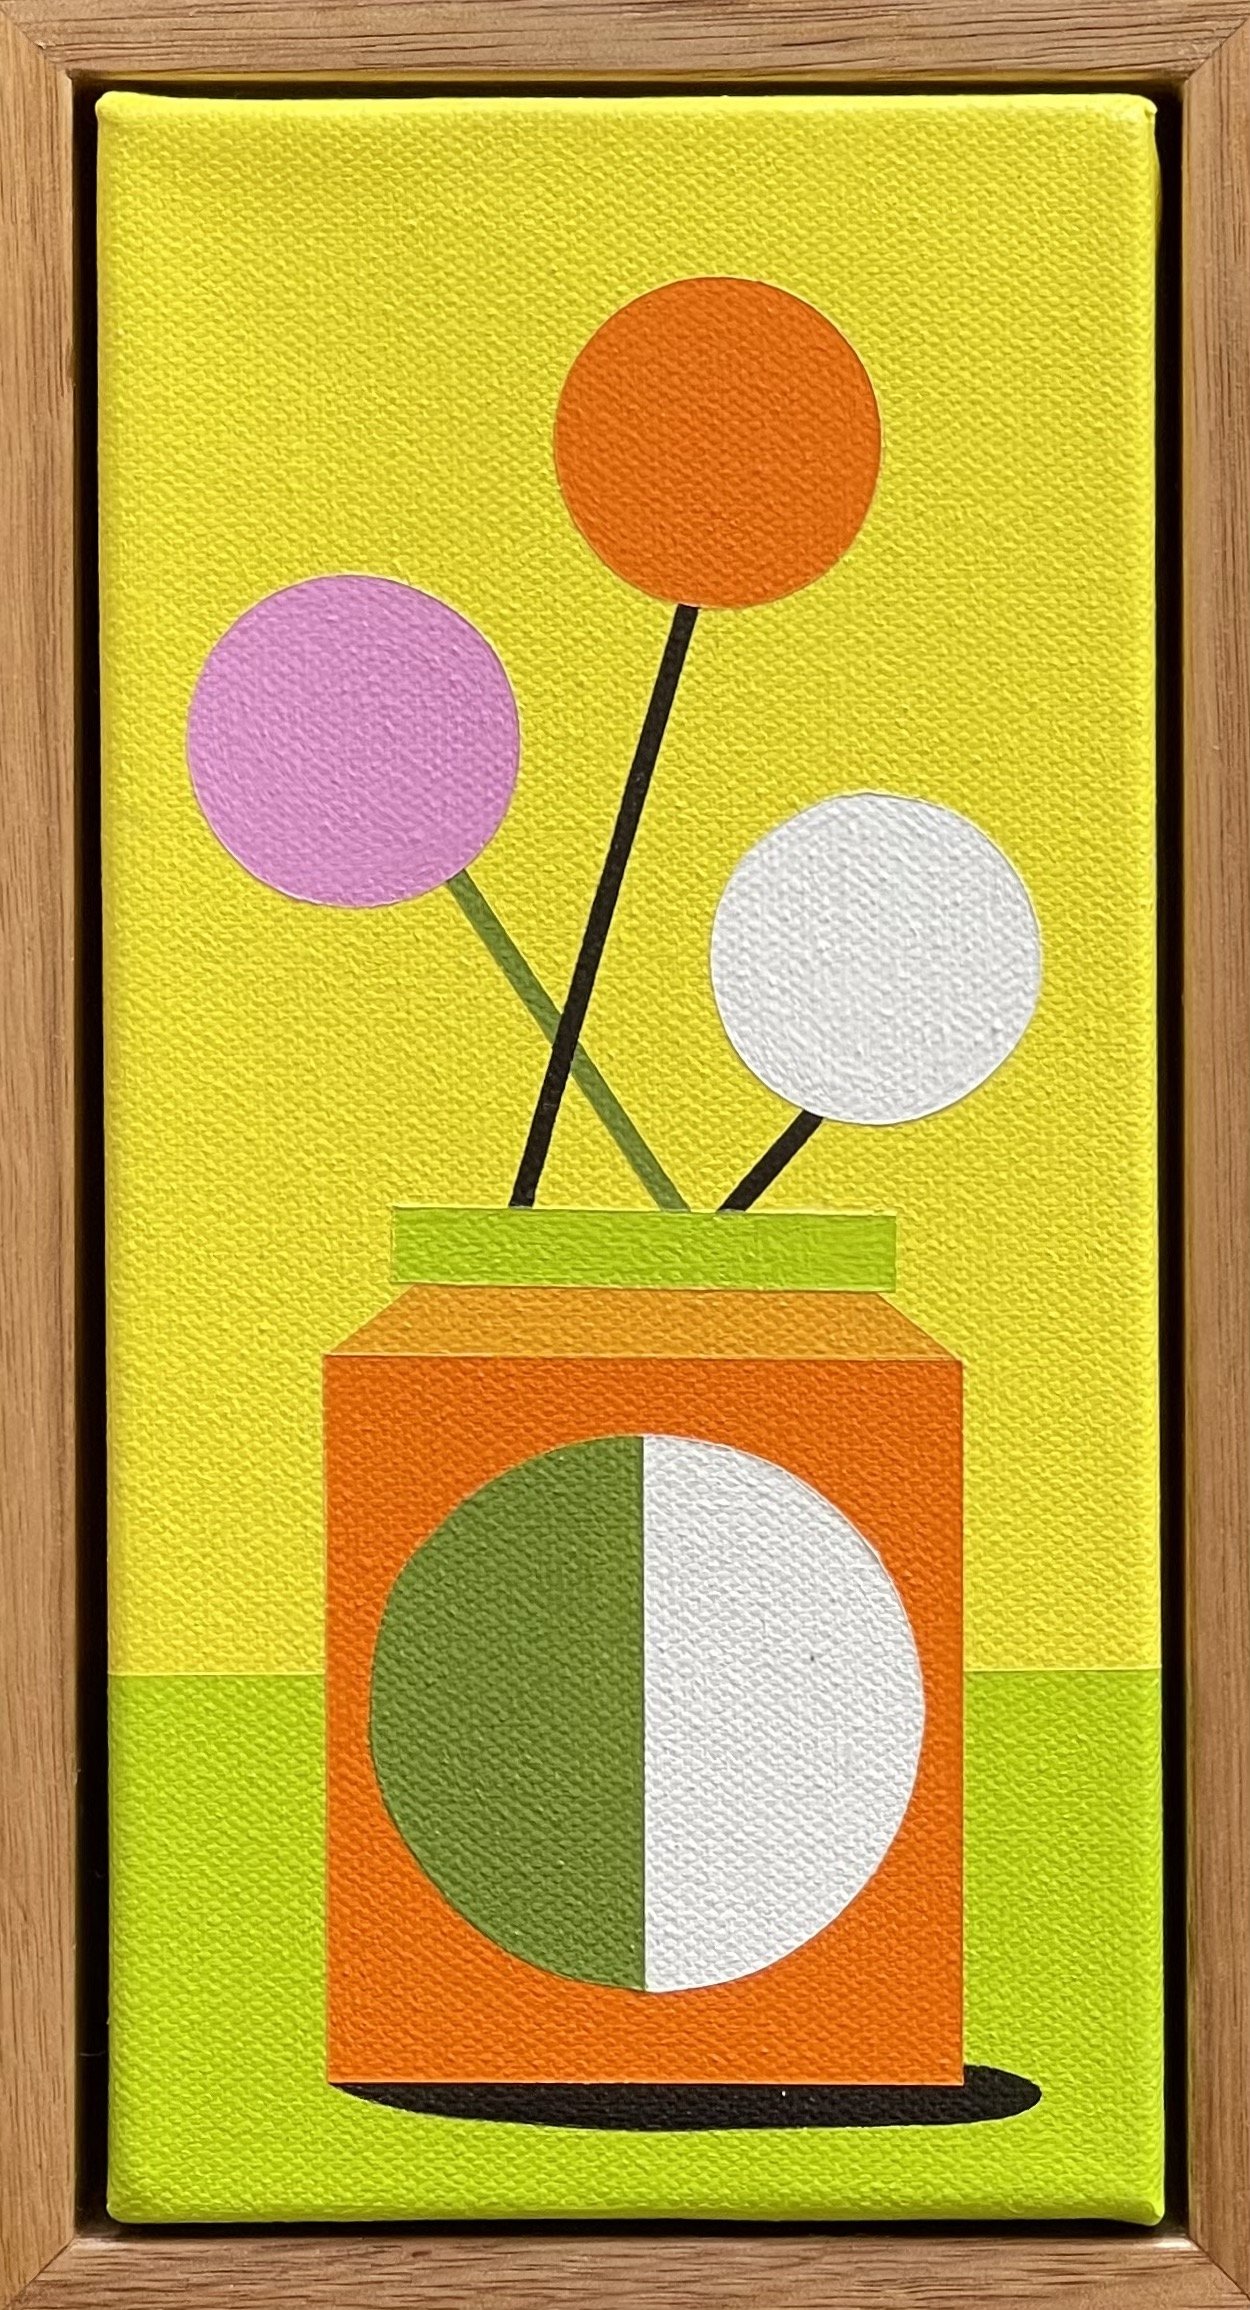 Tiny No. 59 10x20cm framed acrylic on canvas $330